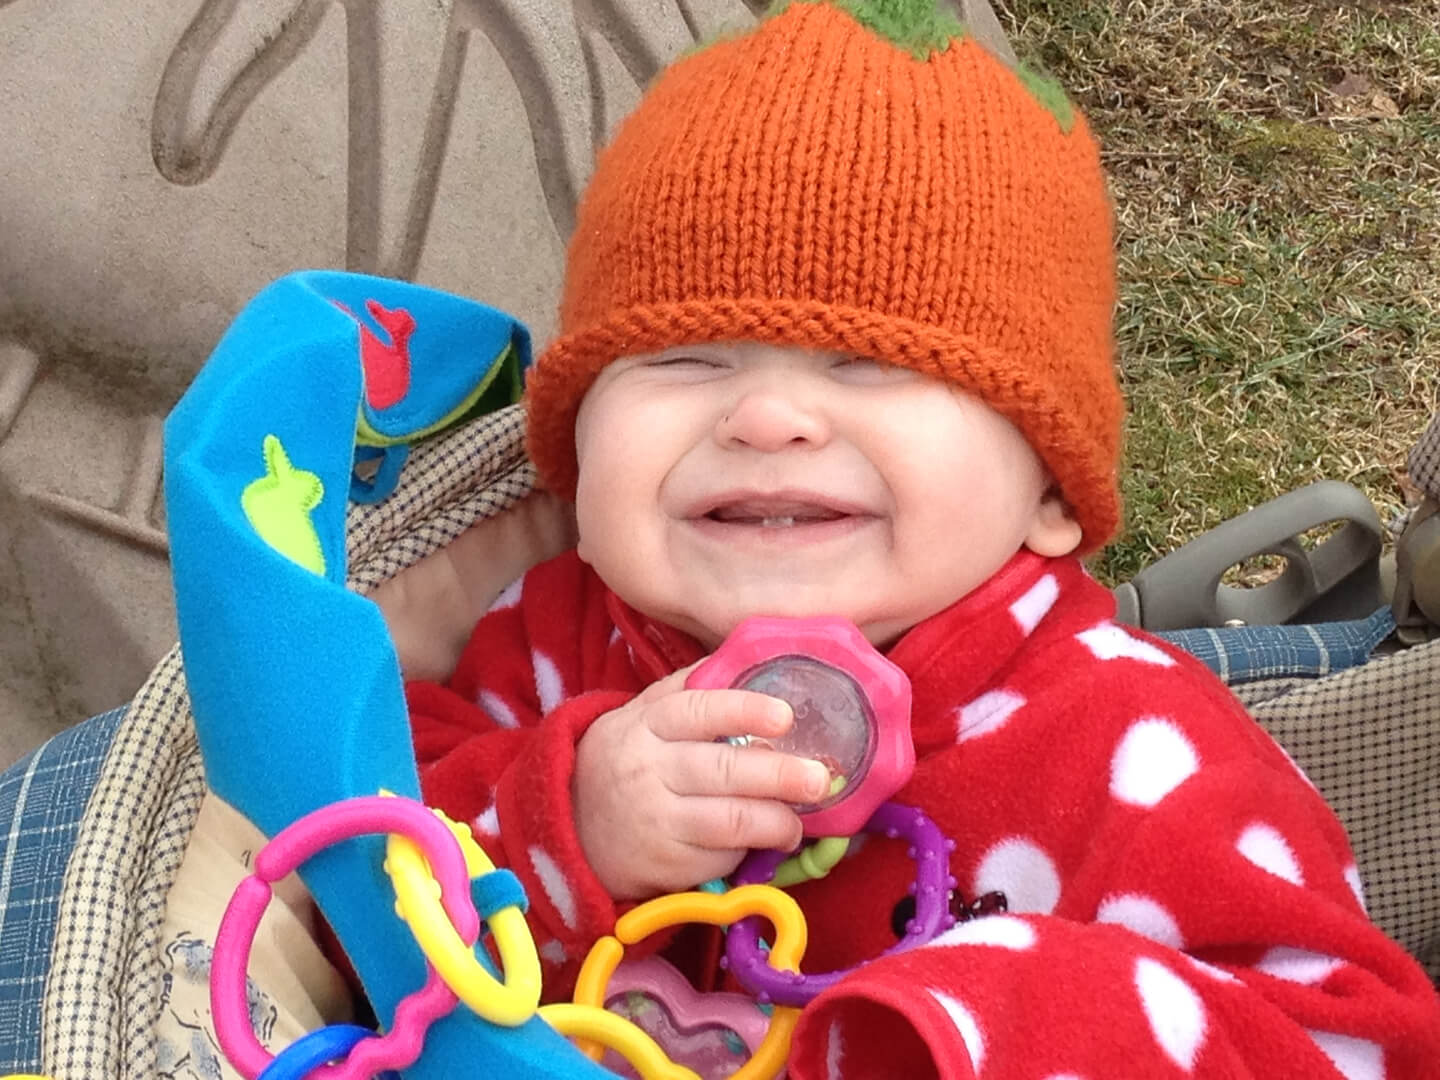 Smiling toddler wearing an orange beanie